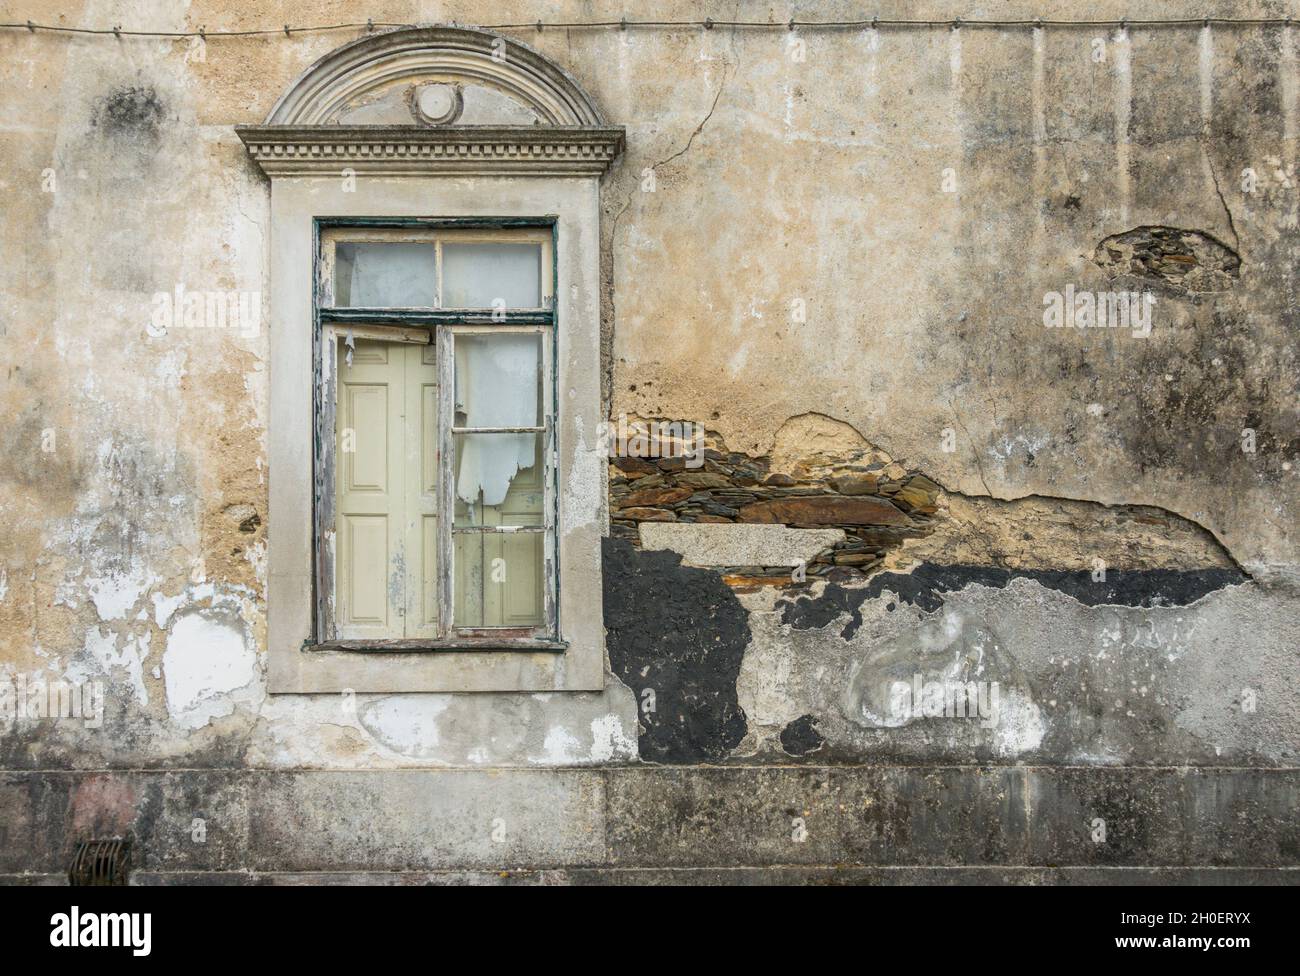 Abbandonata casa dilapidata in Portogallo. Foto Stock